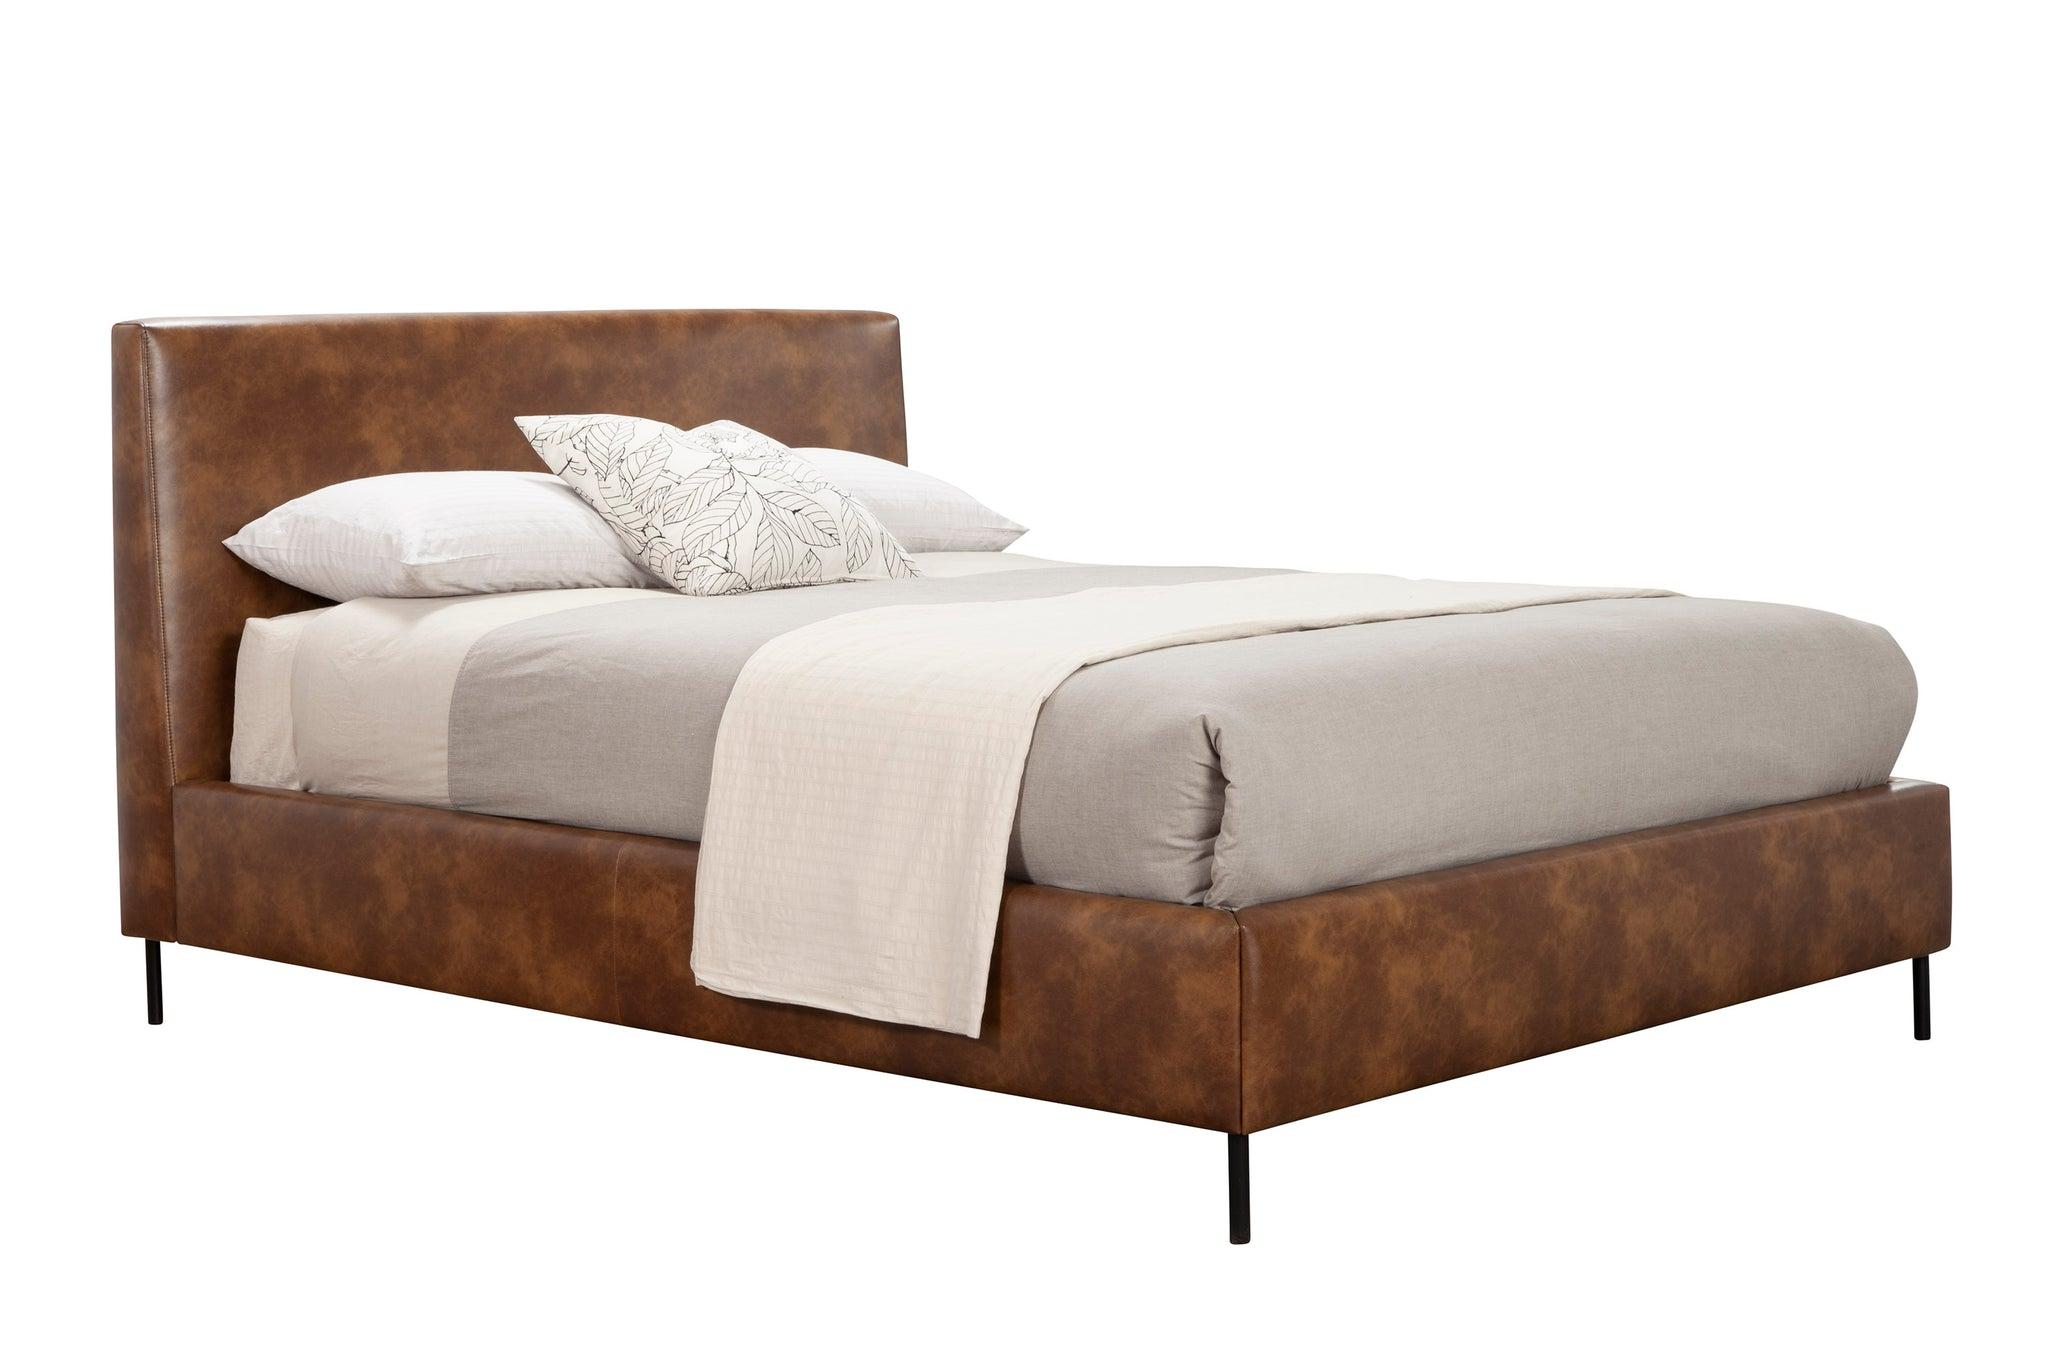 Modern, Rustic Platform Bed SOPHIA 6902F-BRN in Brown Faux Leather